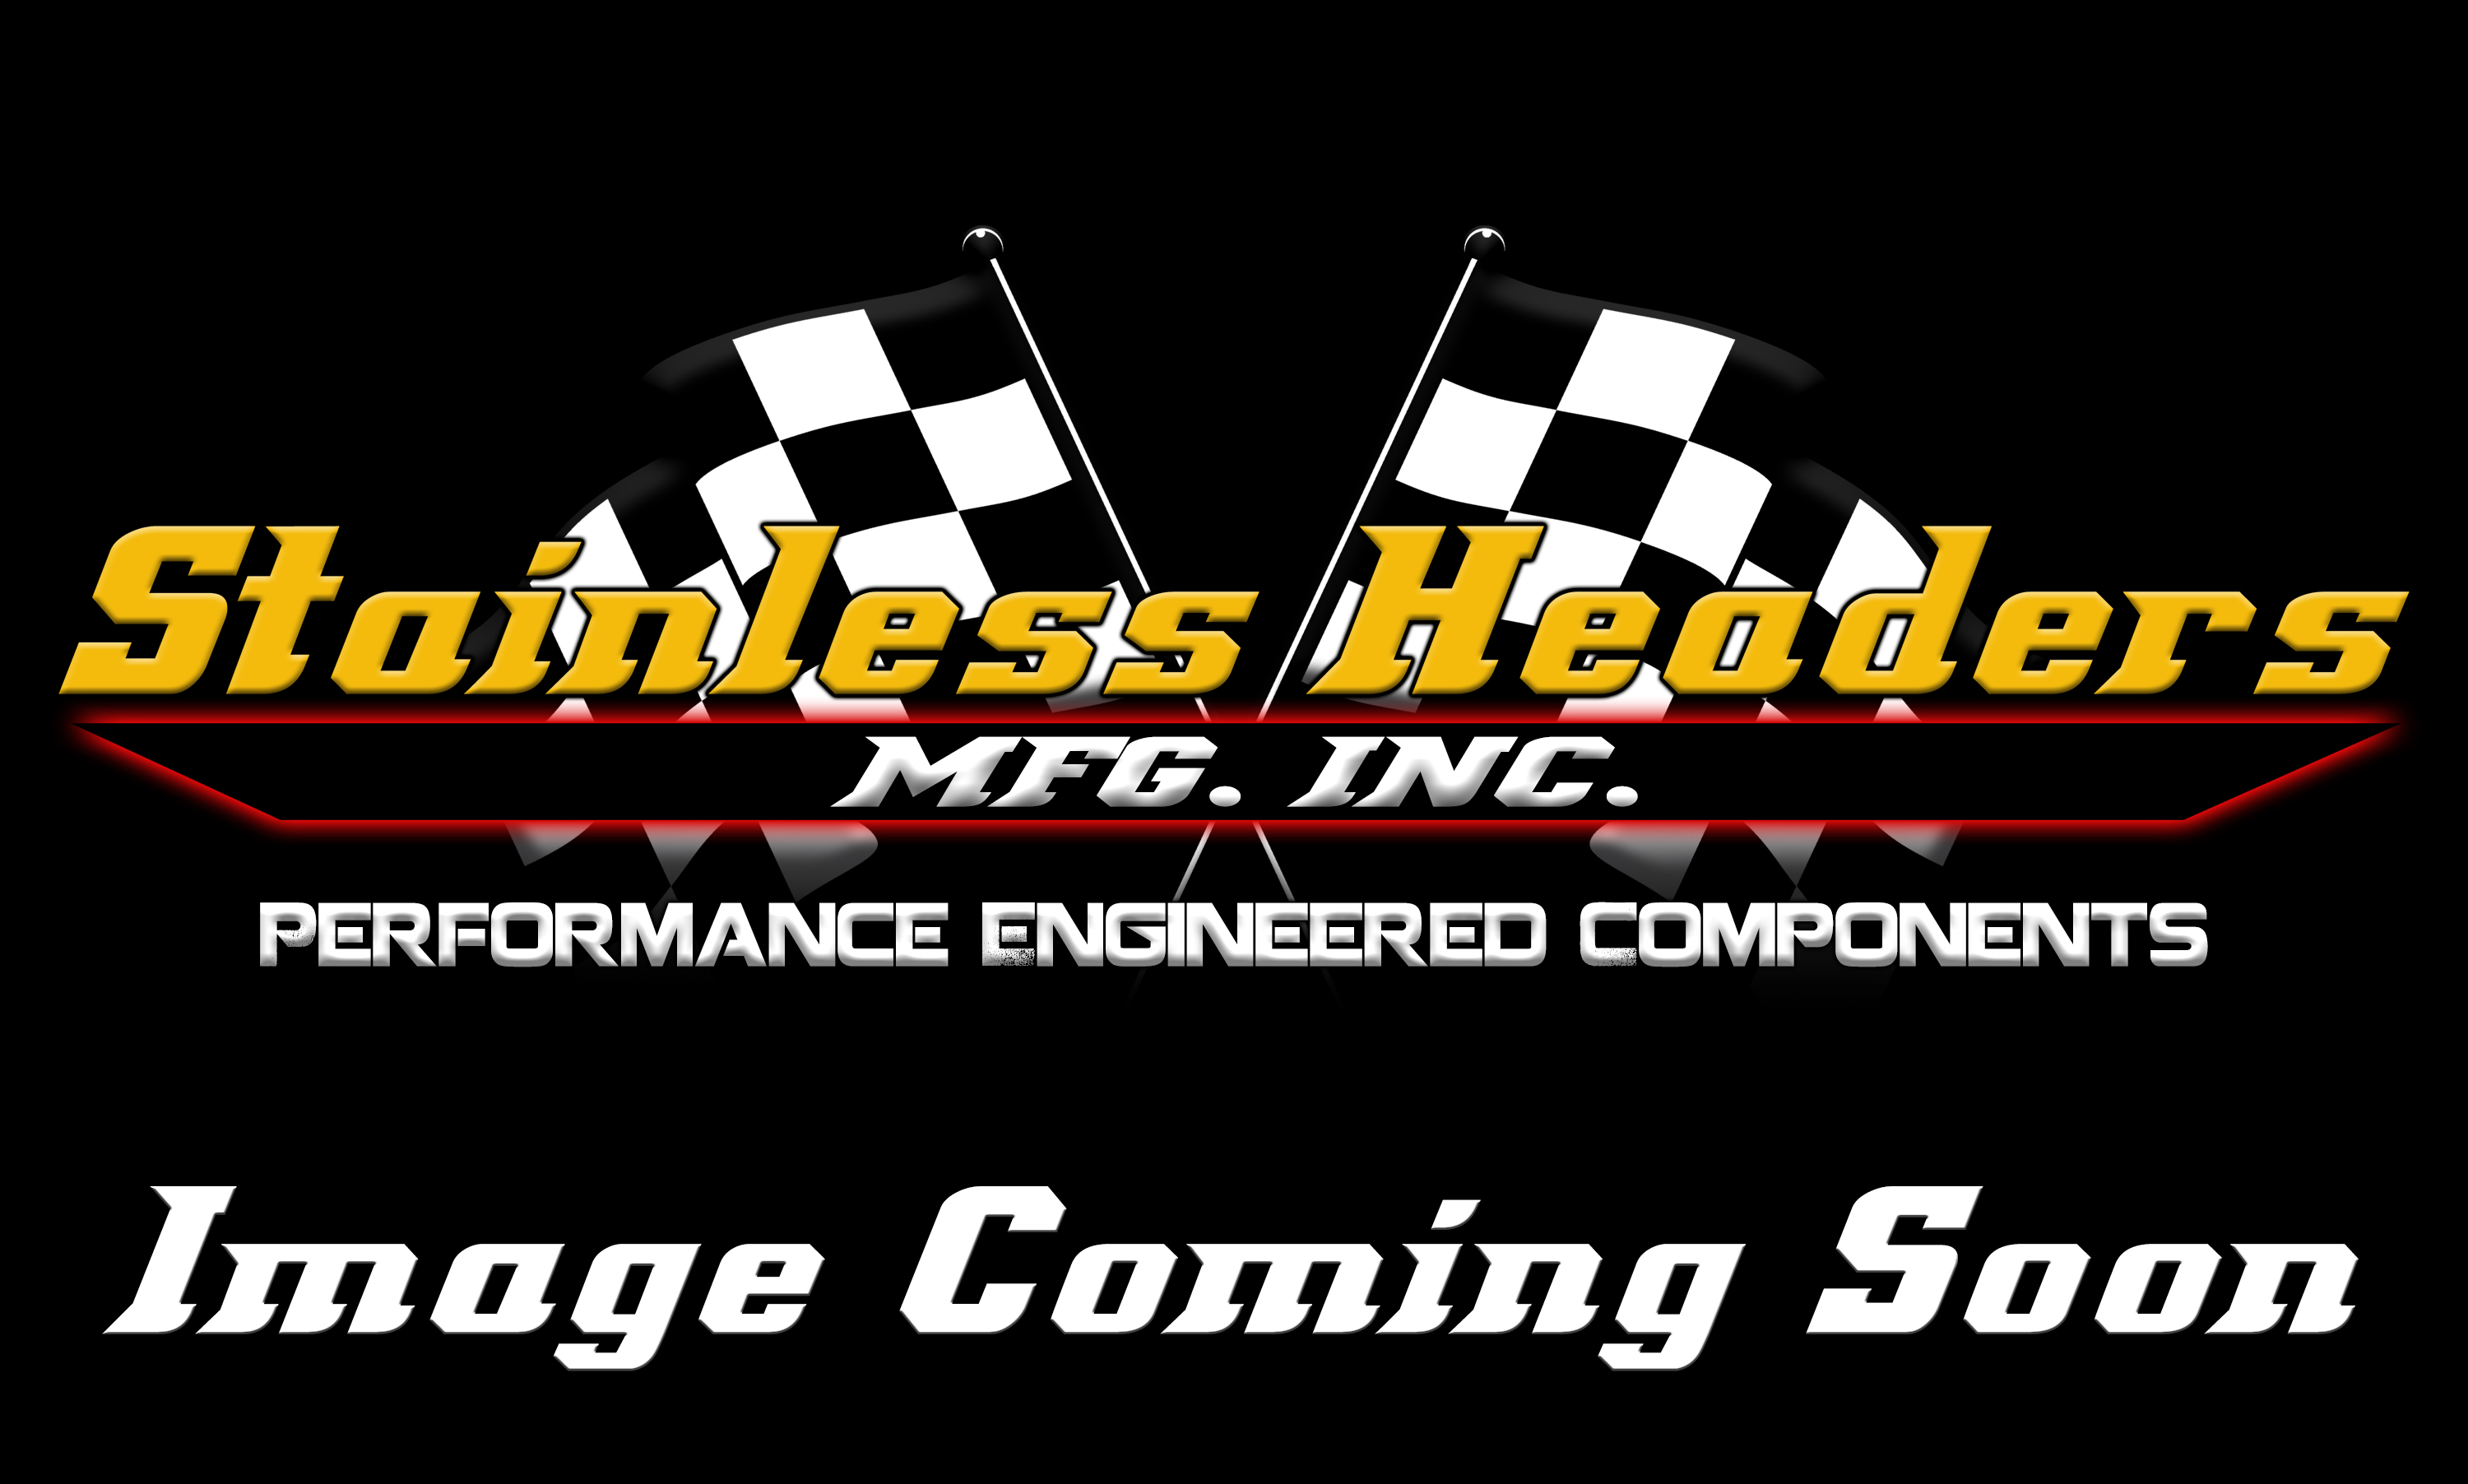 Stainless Headers - Mopar 426 Hemi D4 Raised Square Port Custom Turbo Header Build Kit - Image 5